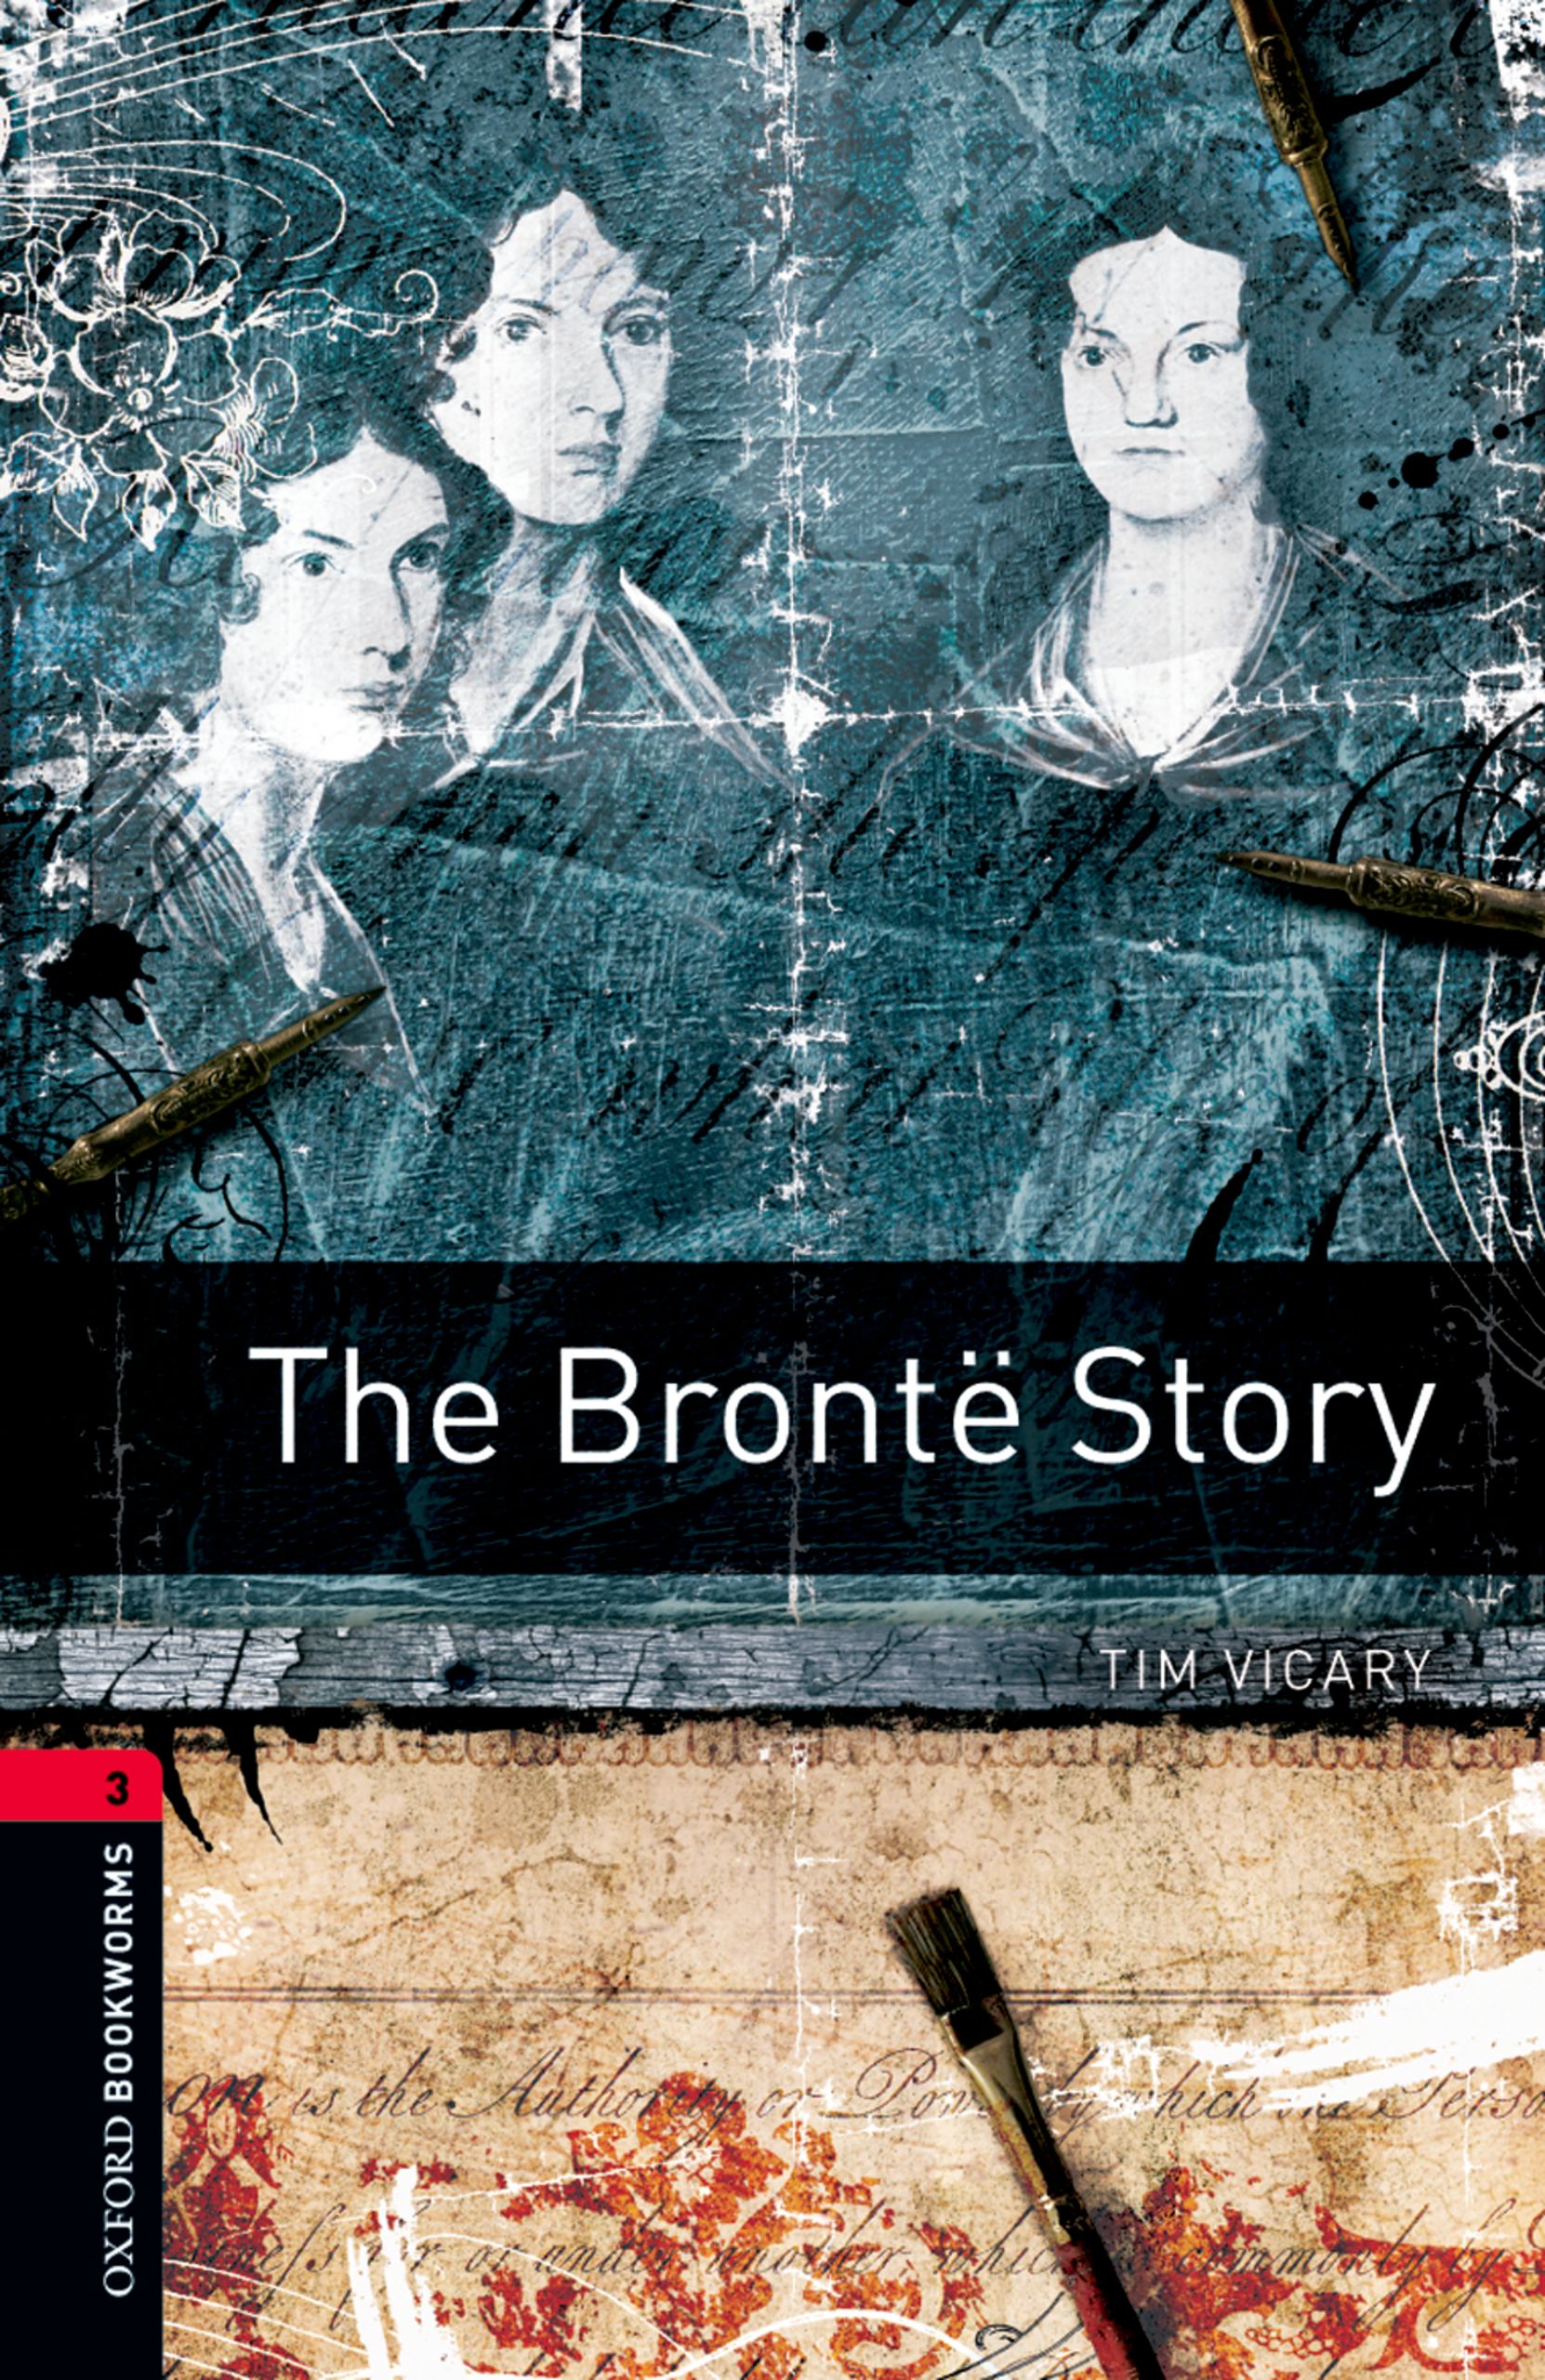 Книга The Brontë Story из серии , созданная Tim Vicary, может относится к жанру Иностранные языки, Зарубежная образовательная литература, Иностранные языки. Стоимость электронной книги The Brontë Story с идентификатором 23573433 составляет 405.87 руб.